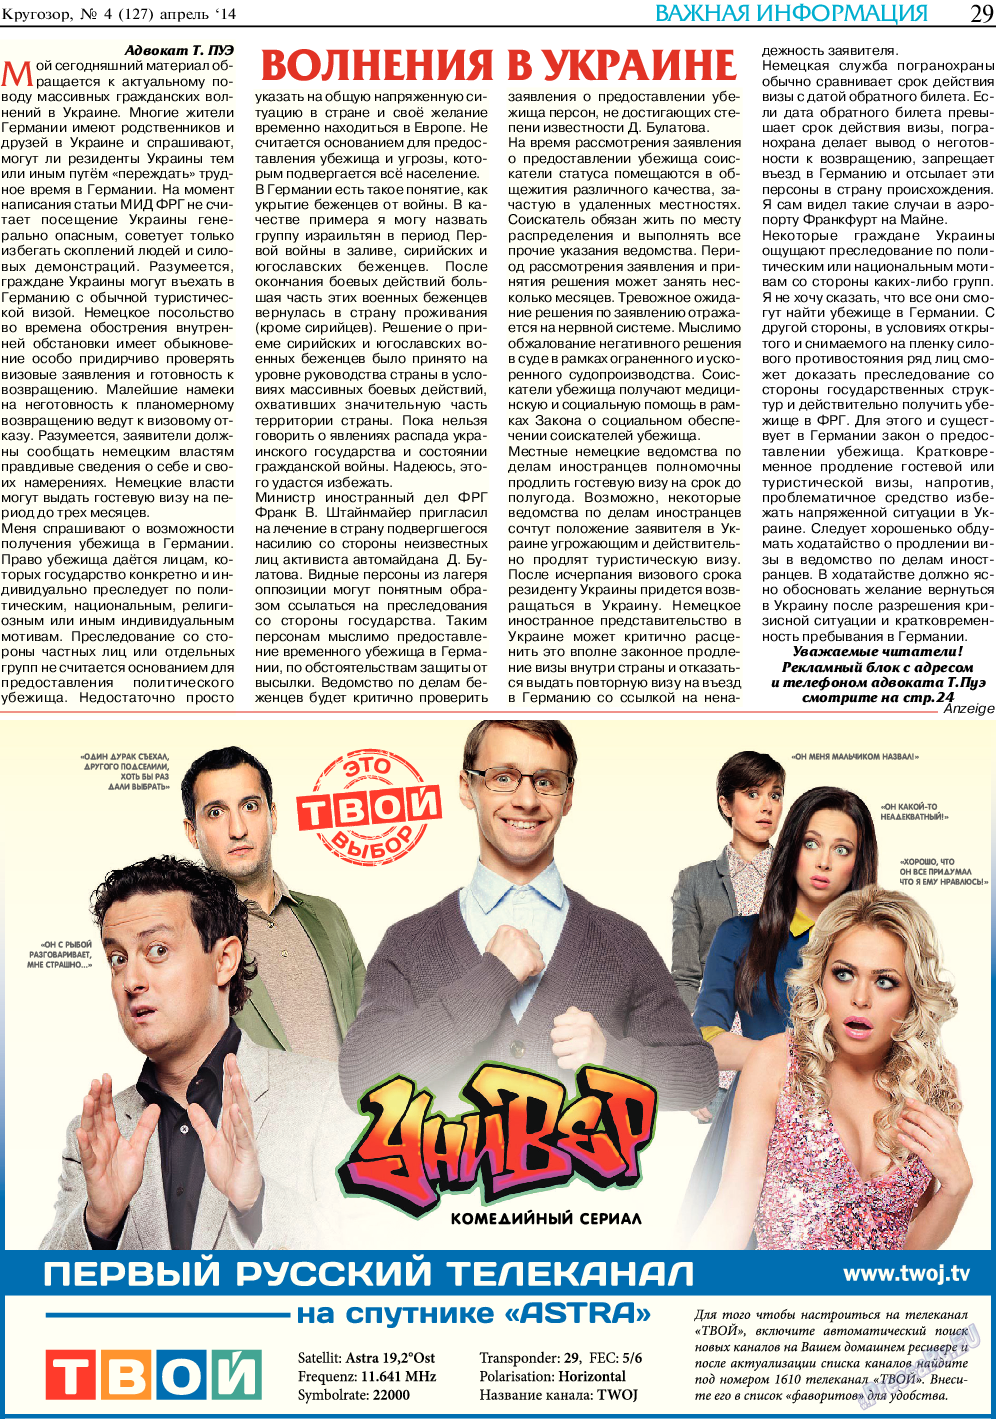 Кругозор, газета. 2014 №4 стр.29